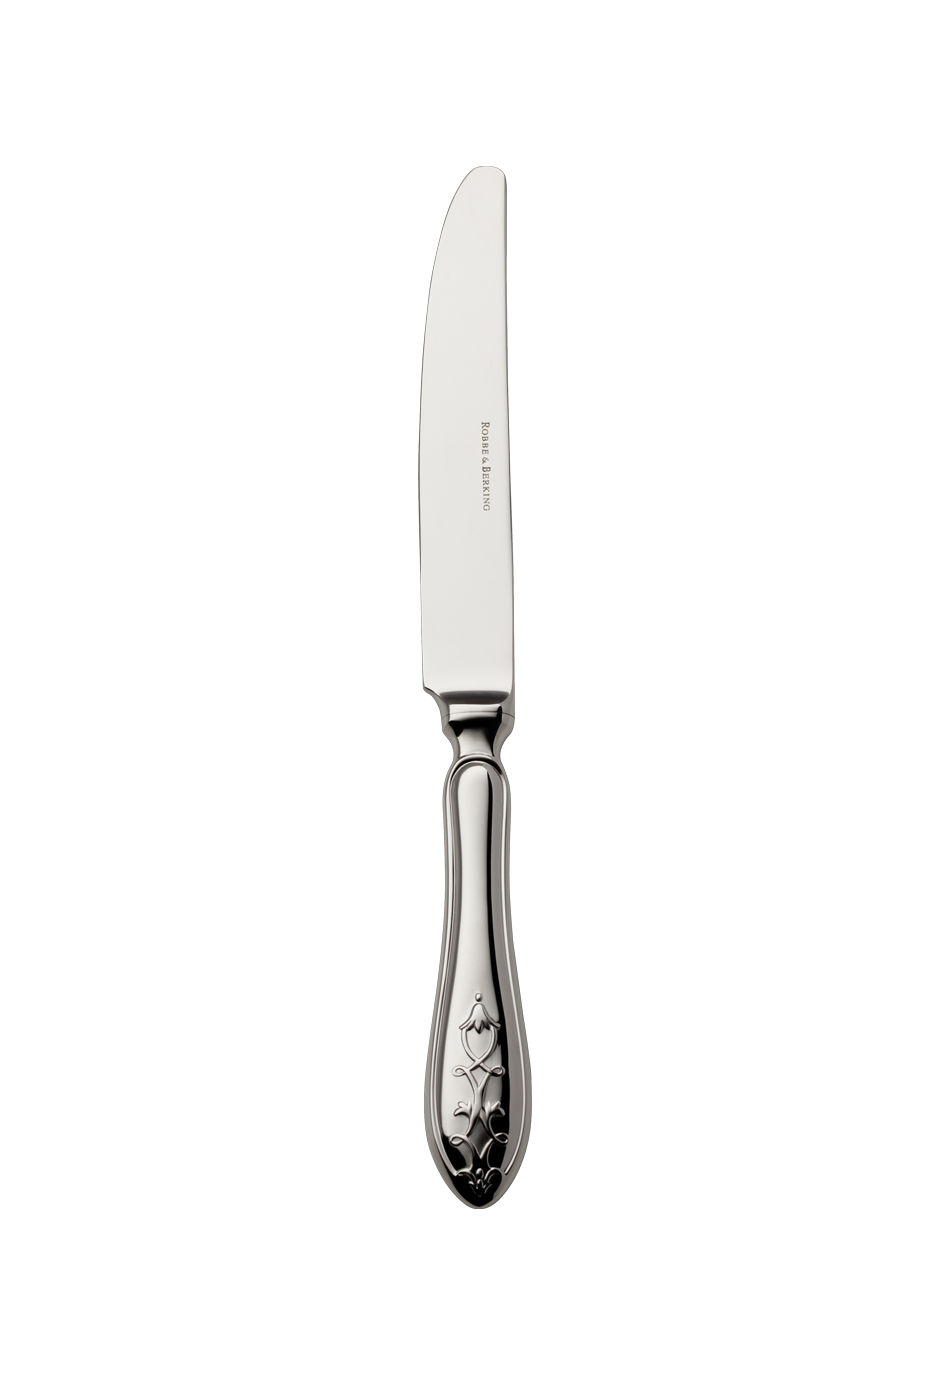 Jardin Menu Knife (18/8 stainless steel)